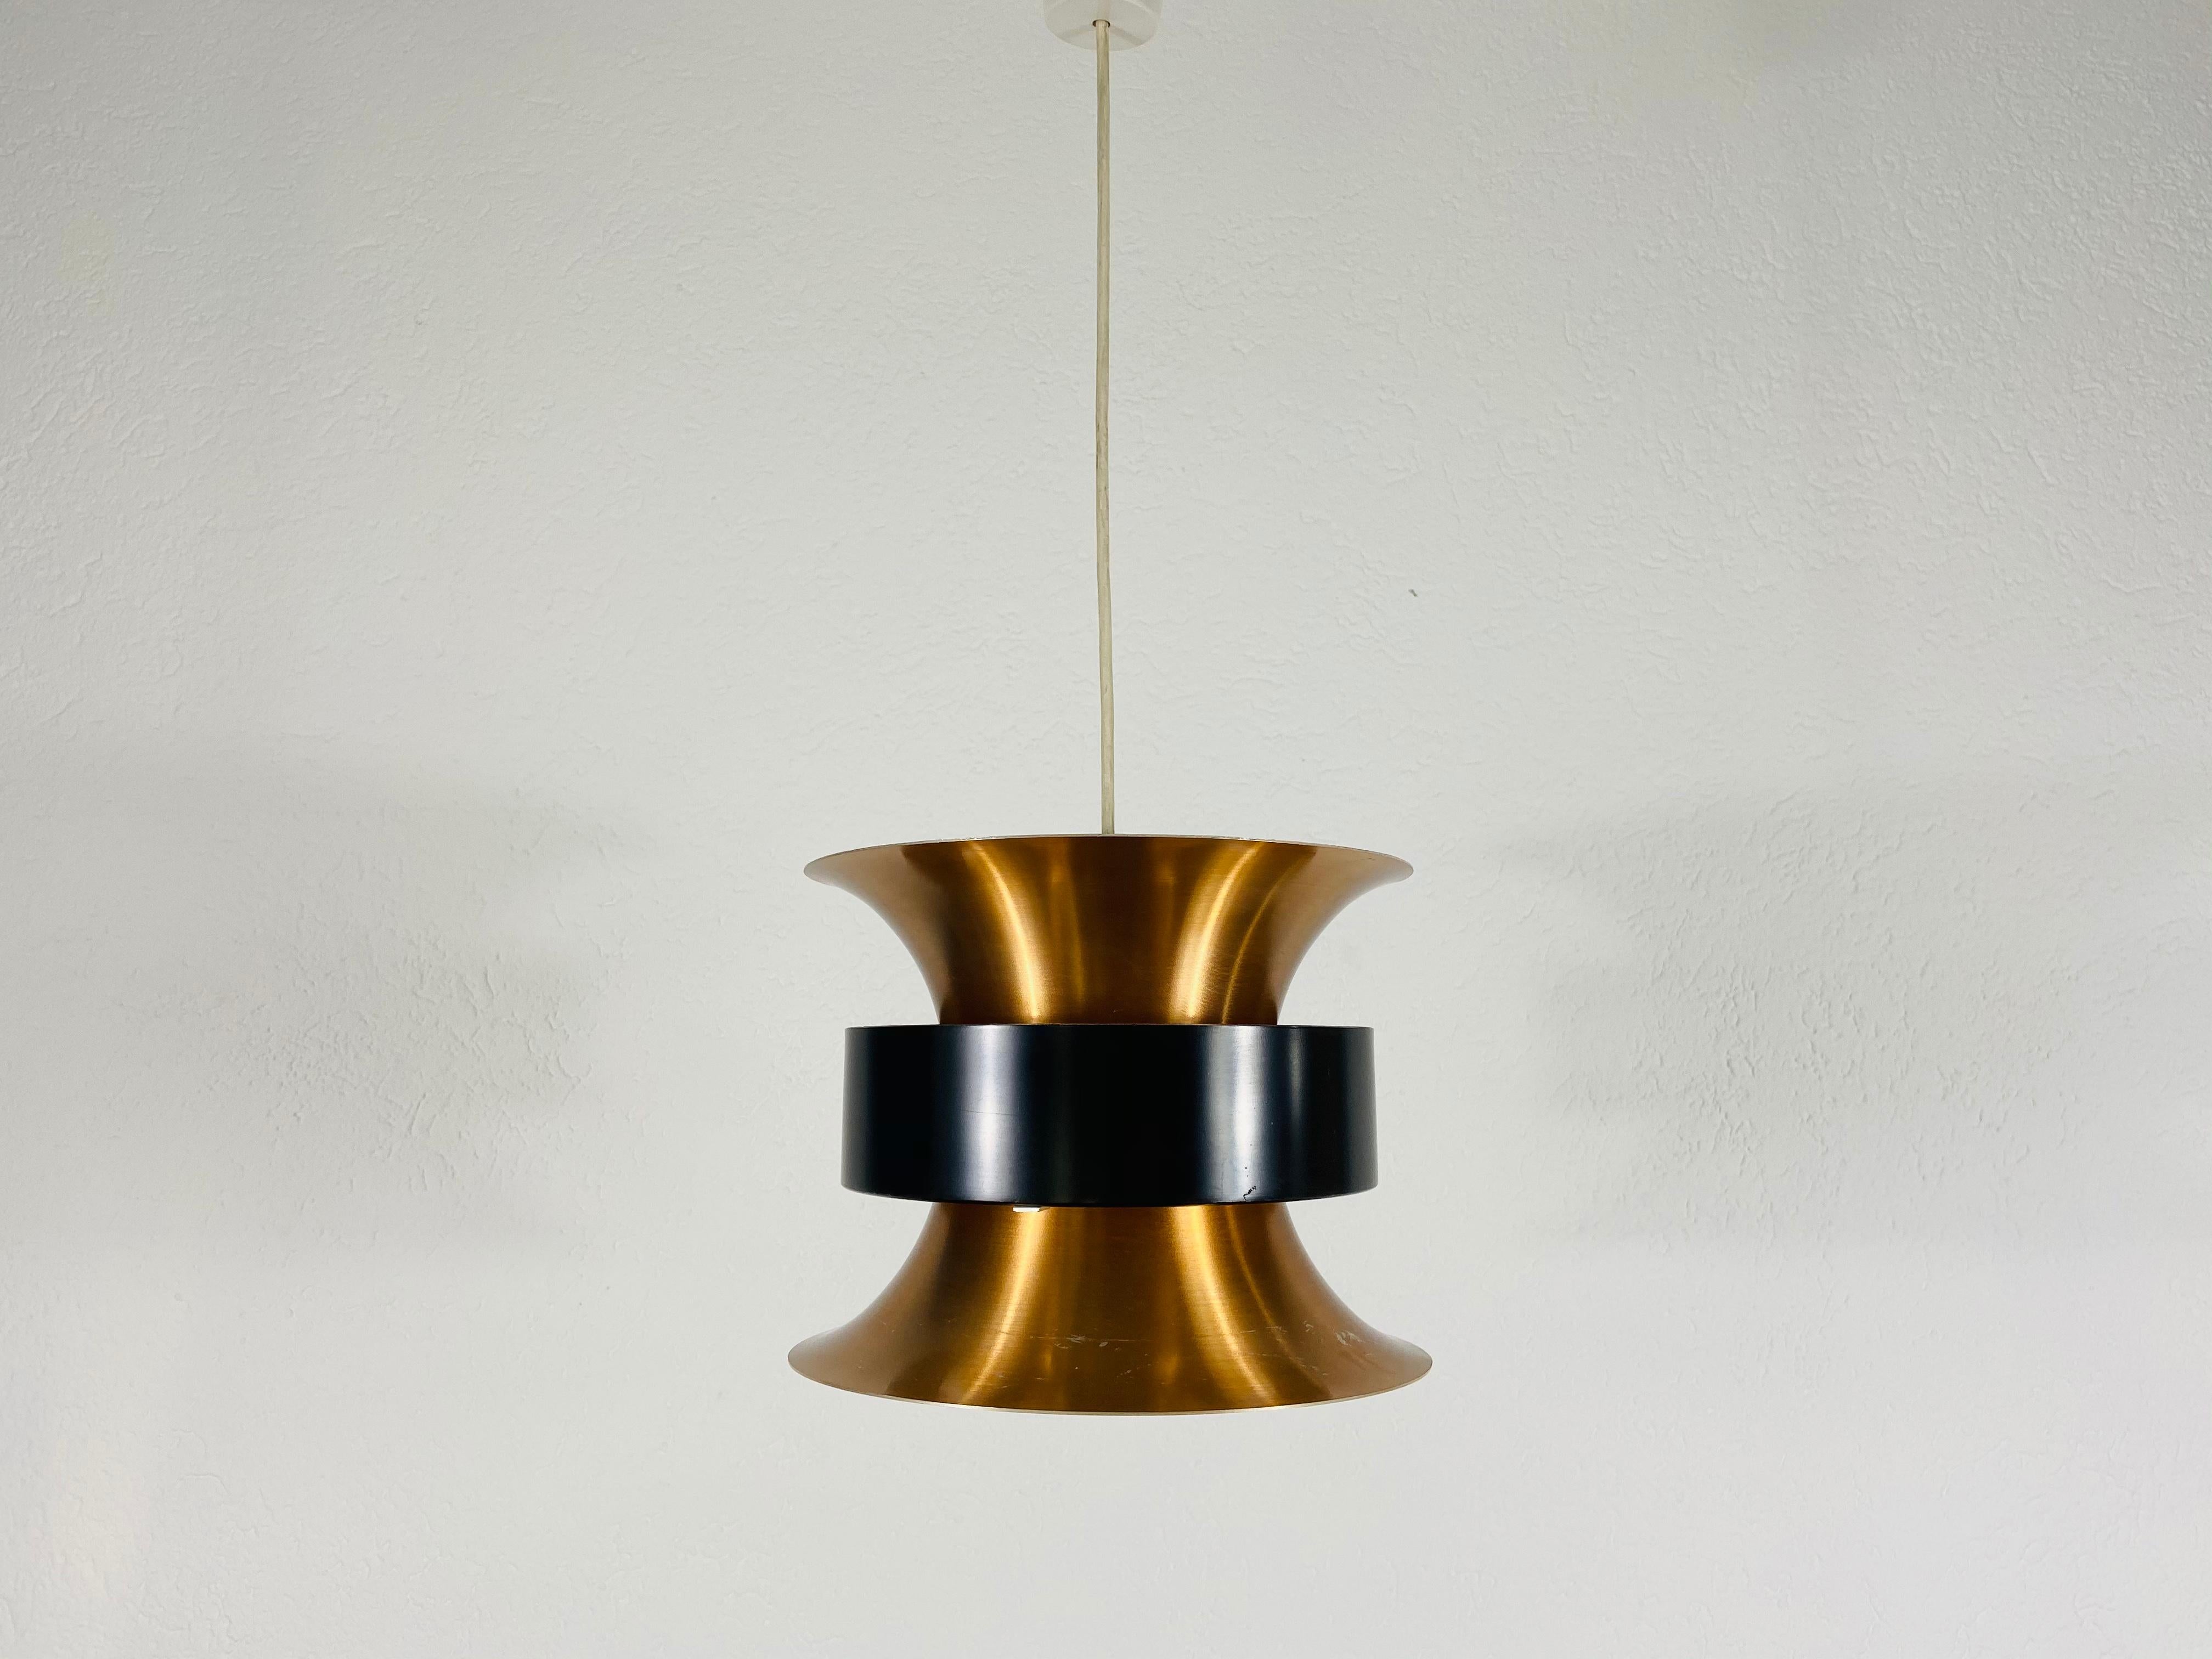 Lampe pendante danoise en noir et cuivre fabriquée en Allemagne dans les années 1960. Le luminaire donne une très belle lumière. Il est fabriqué à partir d'aluminium et de cuivre fins.

Le luminaire nécessite une ampoule E27. Expédition express